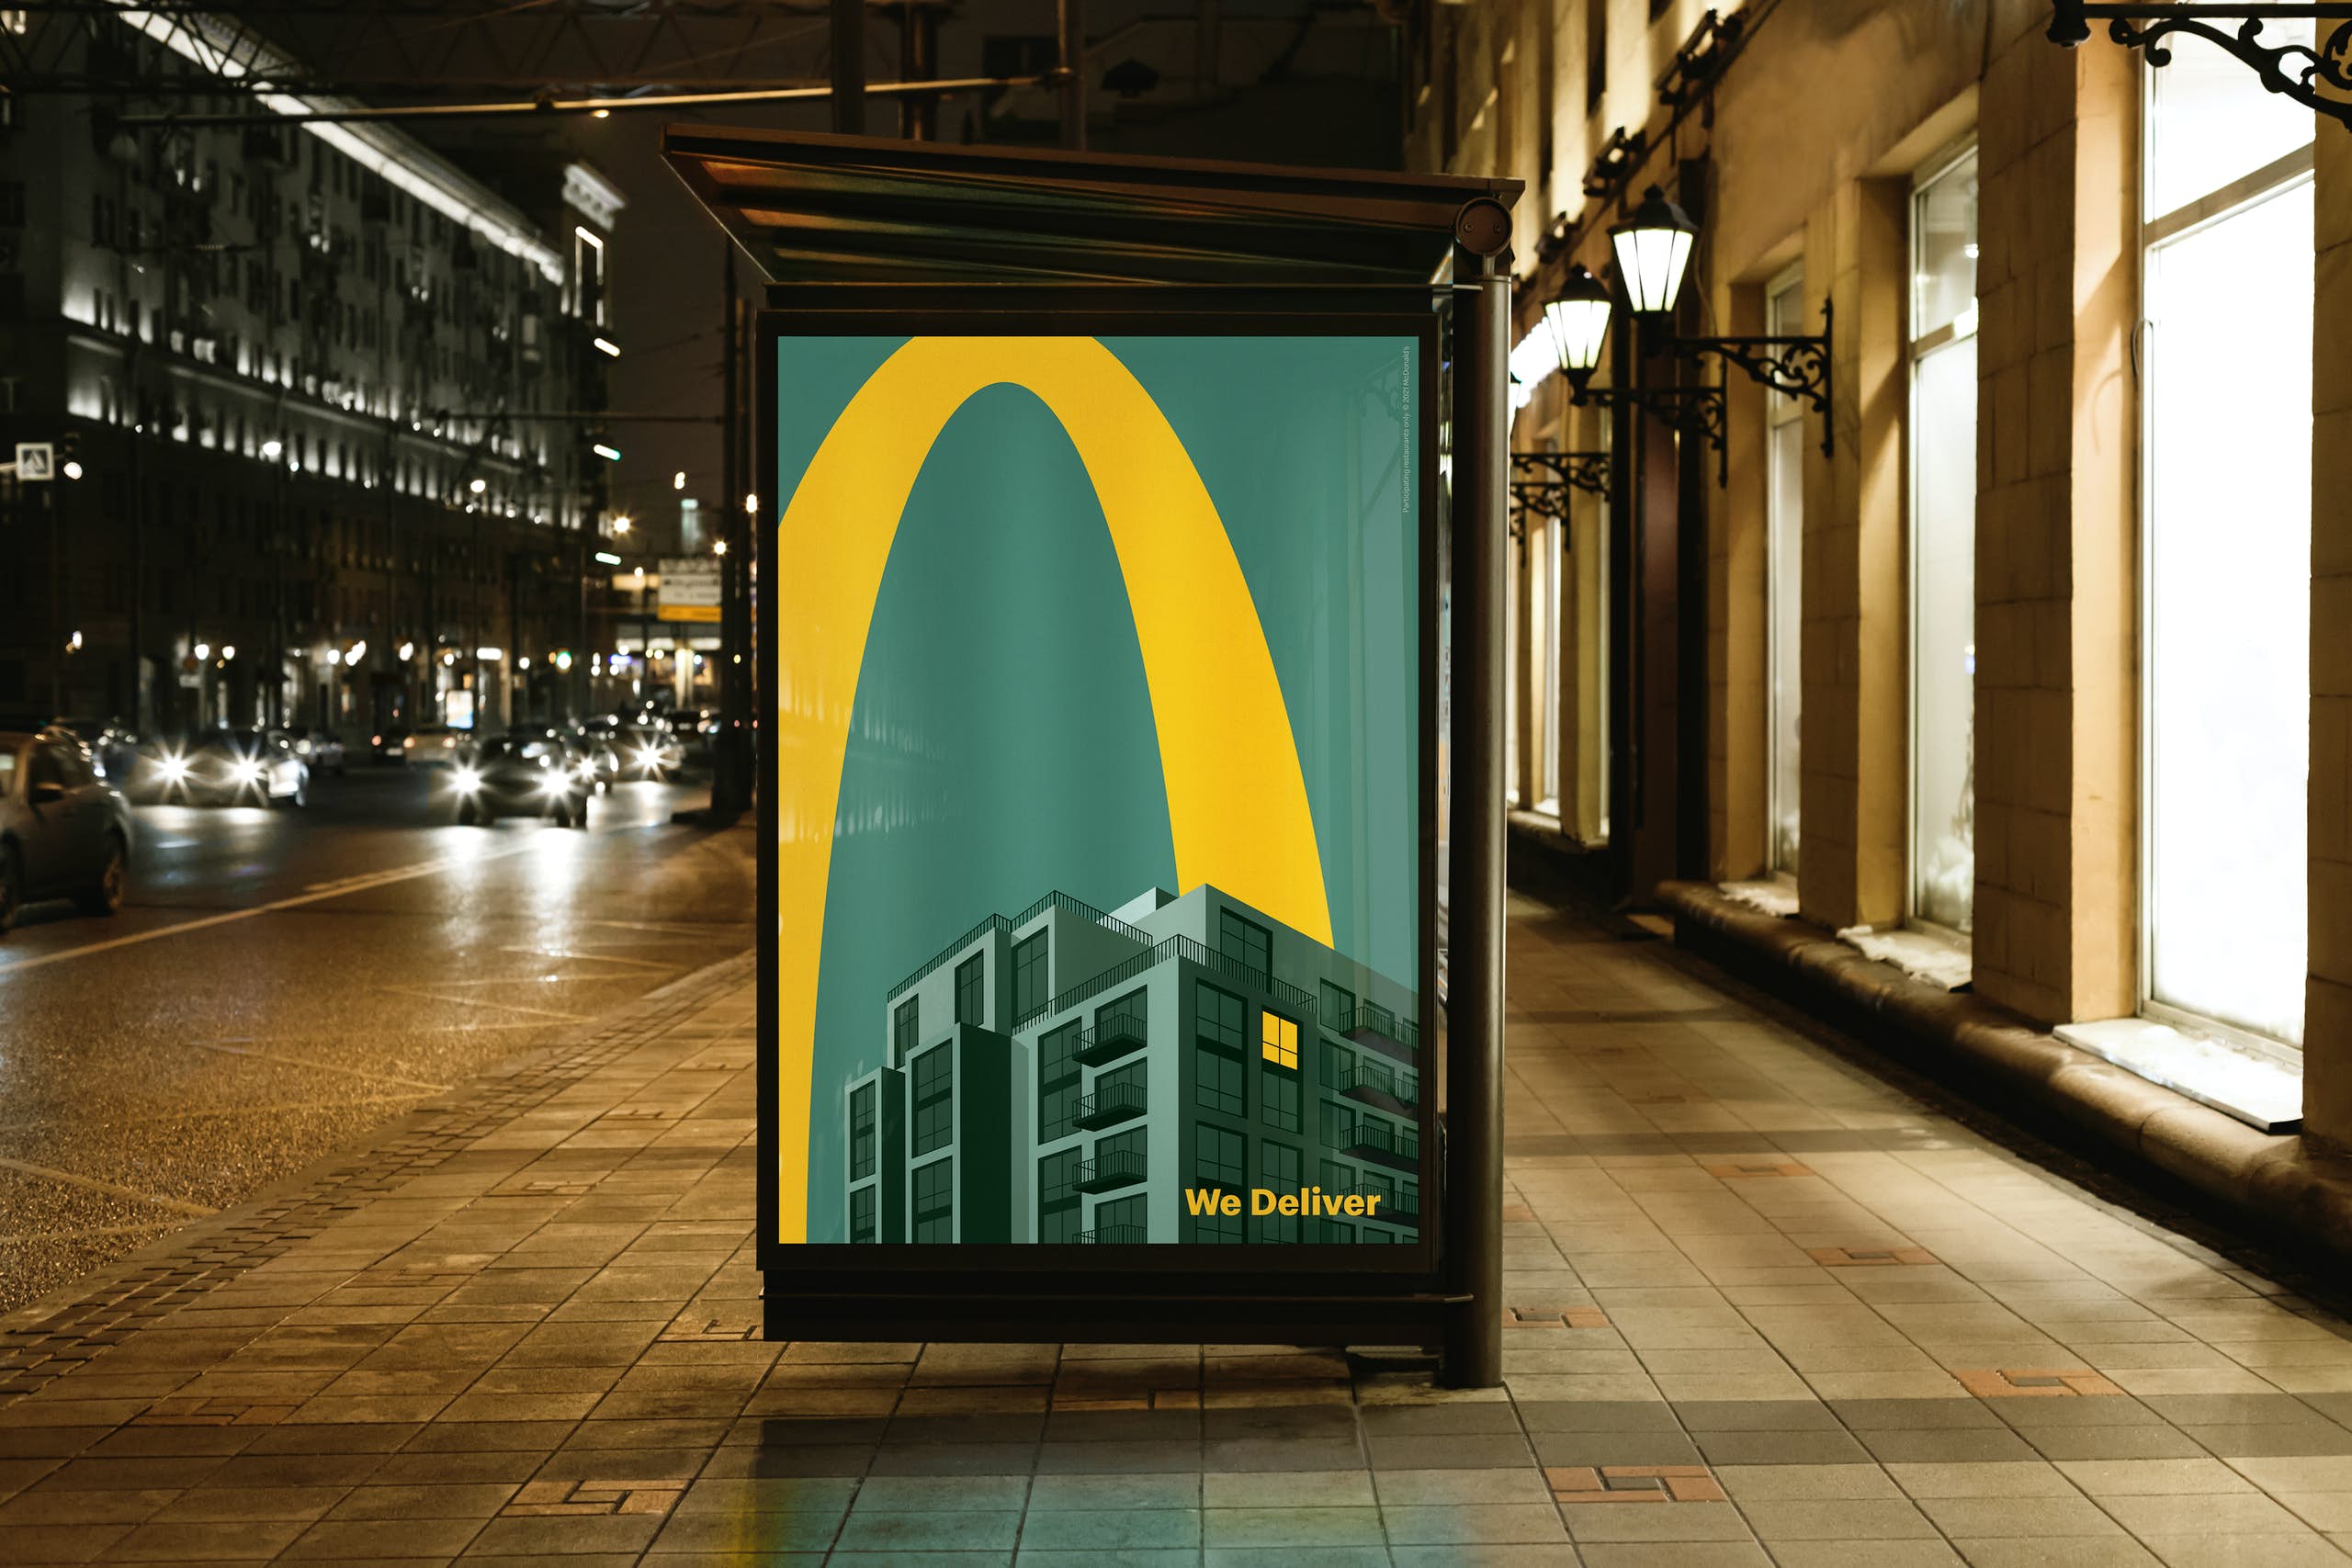 英国麦当劳夜间送餐广告:金拱门照亮迷人的夜,简洁,高效,美!